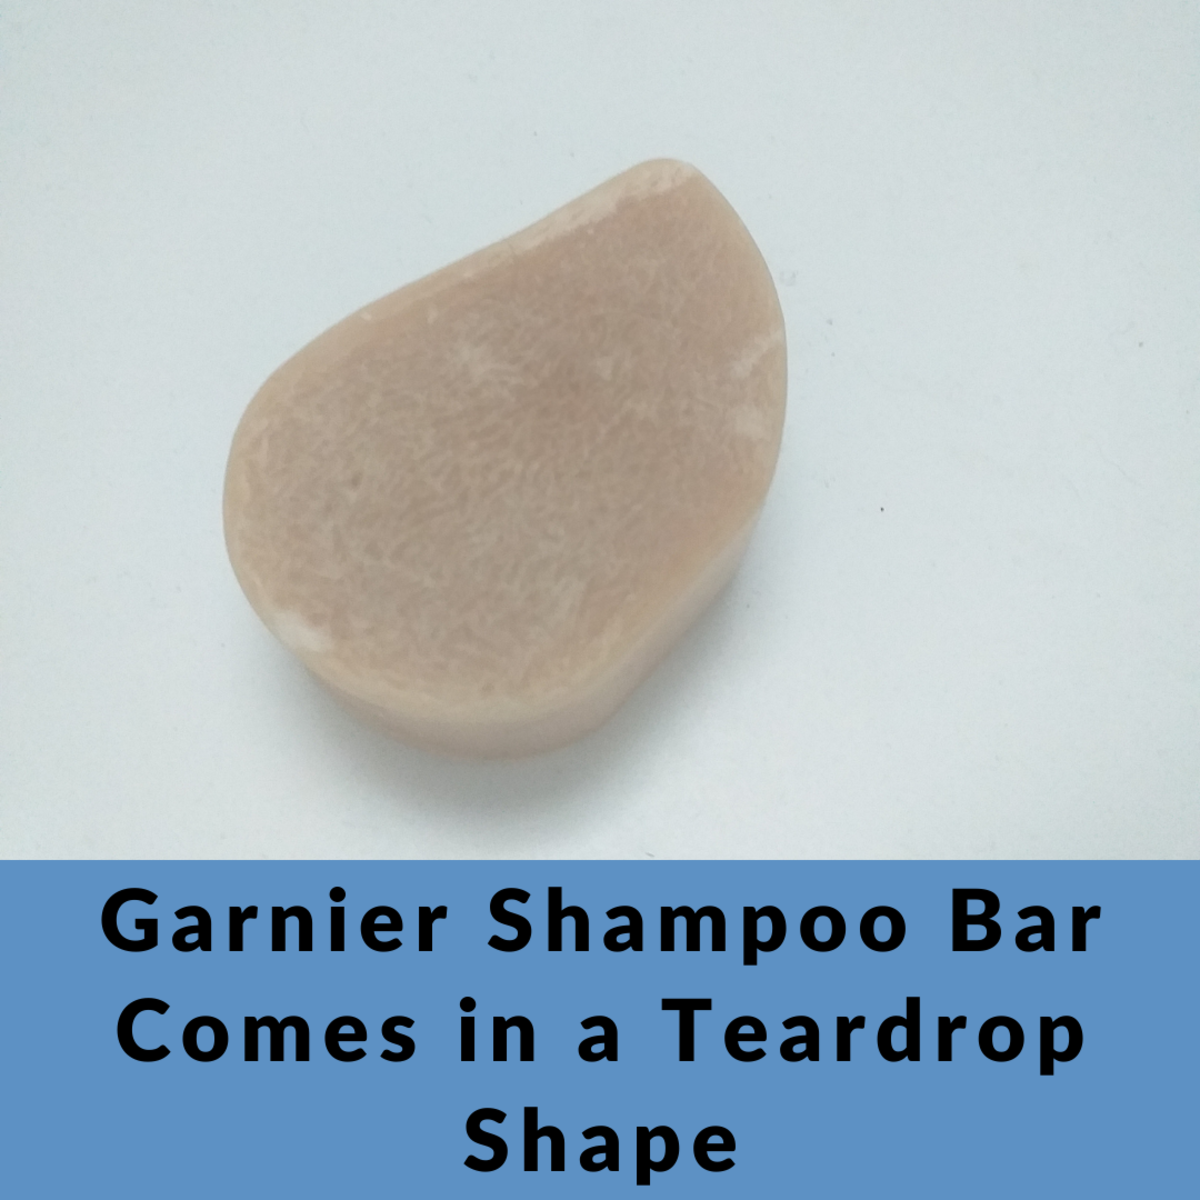 The Garnier Shampoo bar is shaped like a teardrop, not square or rectangle like most shampoo bars.